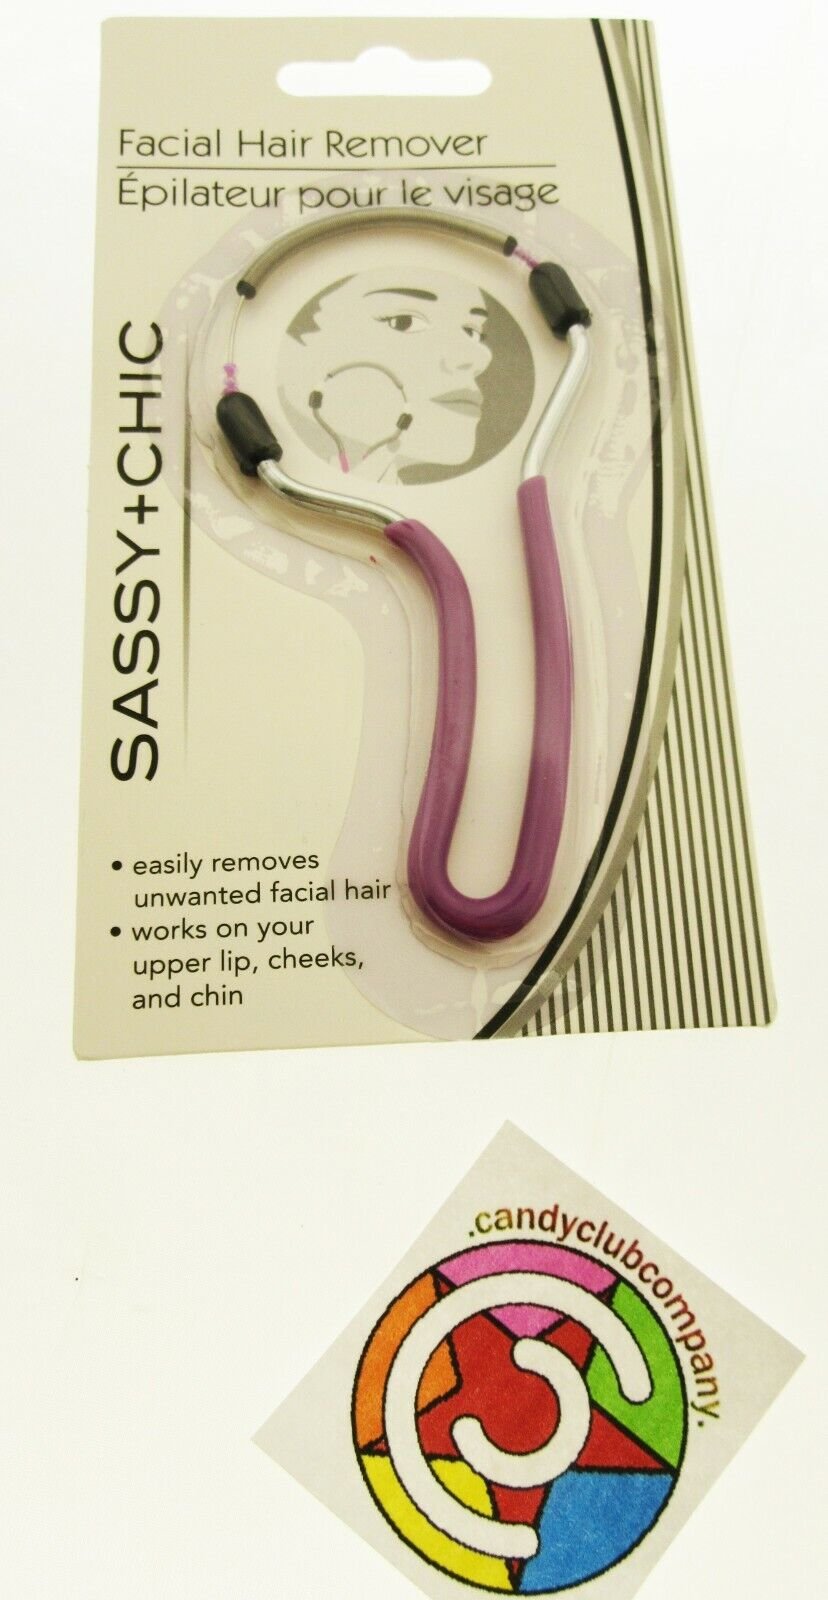 Facial Hair Remover Sassy-Chic Manual Epilator - Easily Remove Peach Fuzz